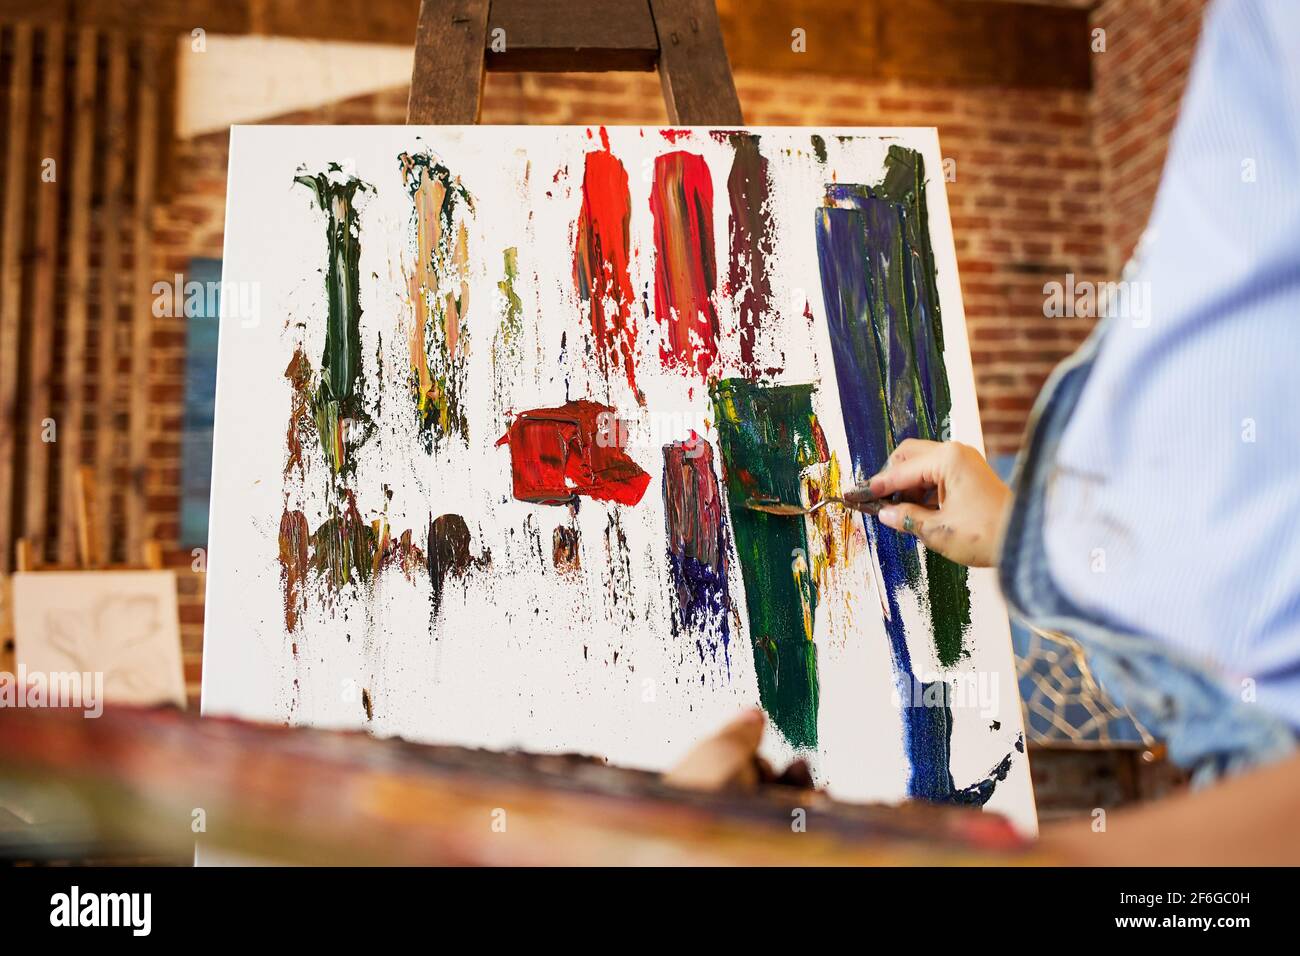 Peintre en studio créant une image abstraite sur toile à l'aide de peintures à l'huile et d'un couteau à palette. Jeune femme artiste travaillant. Processus créatif, détendez-vous Banque D'Images